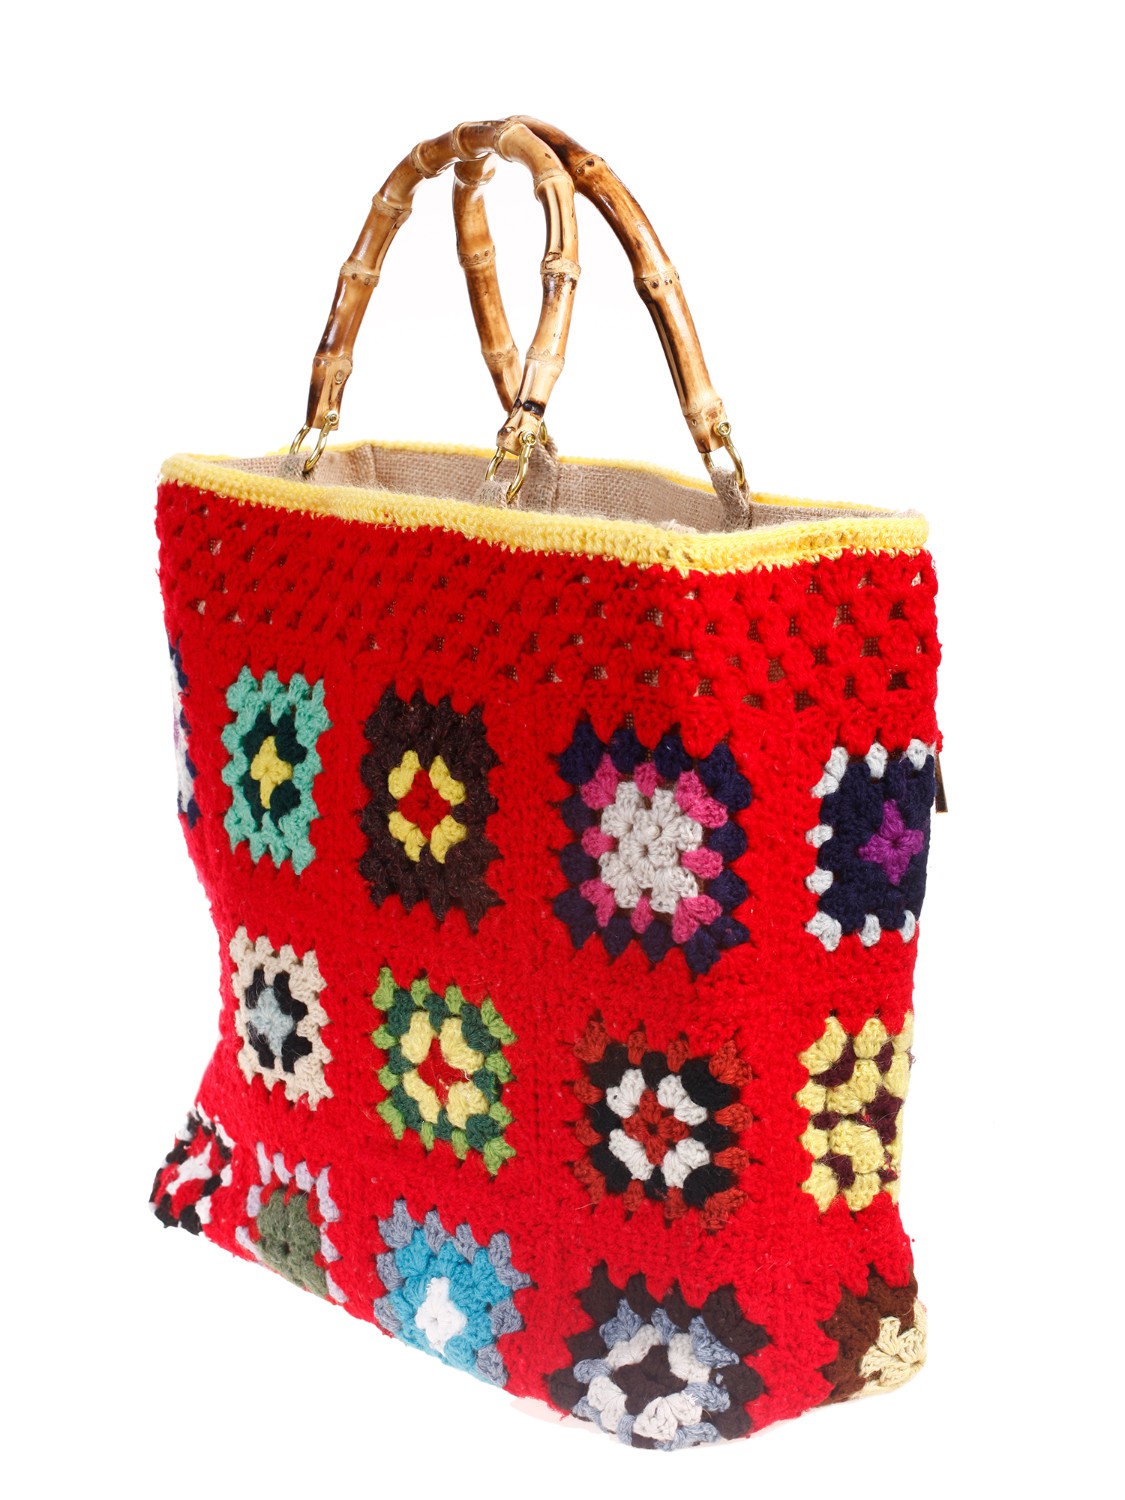 shop LA MILANESA Saldi Borsa: La Milanesa borsa Crochet XW1.
Dimensioni: altezza 35 cm larghezza 41 cm profondità 12 cm.
Composizione: 100% lana.
Made in Italy.. XW1 LADY CROCHET-2 ROSSO number 2851287